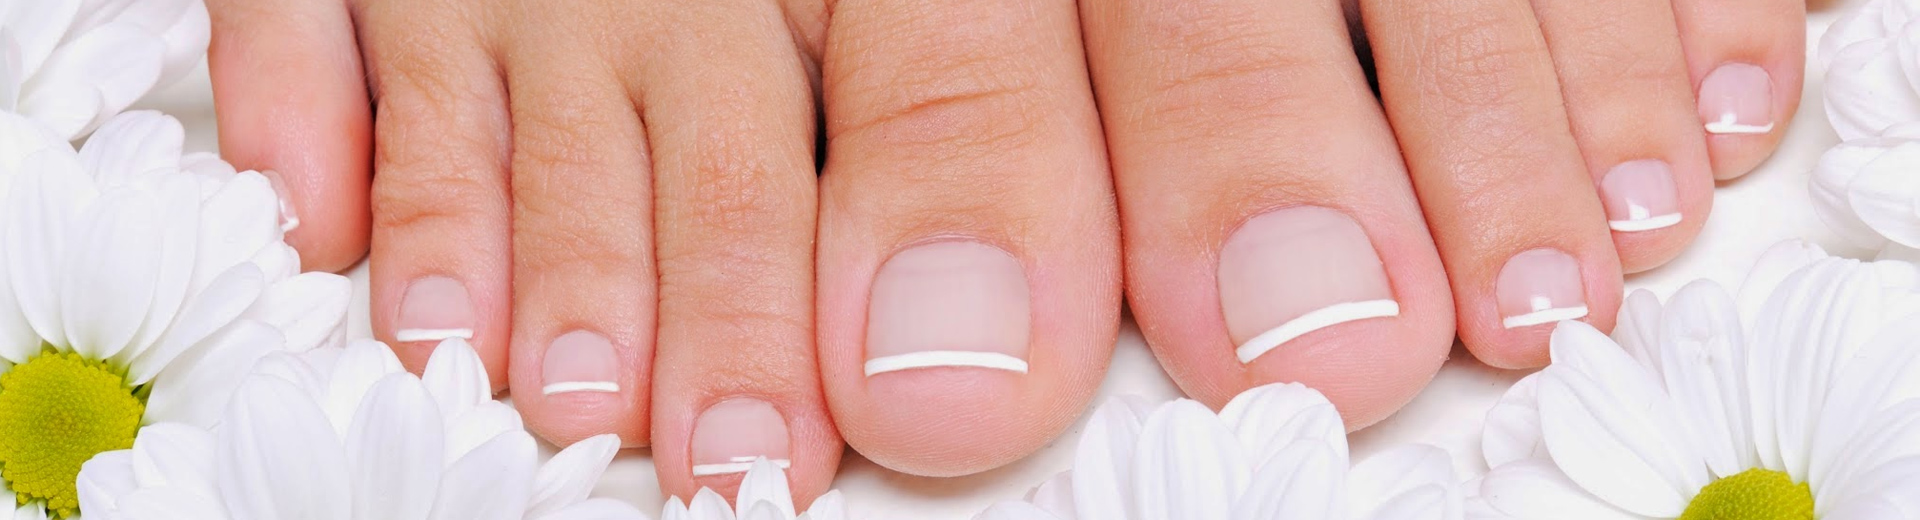 Современный безболезненный способ лечения вросшего ногтя